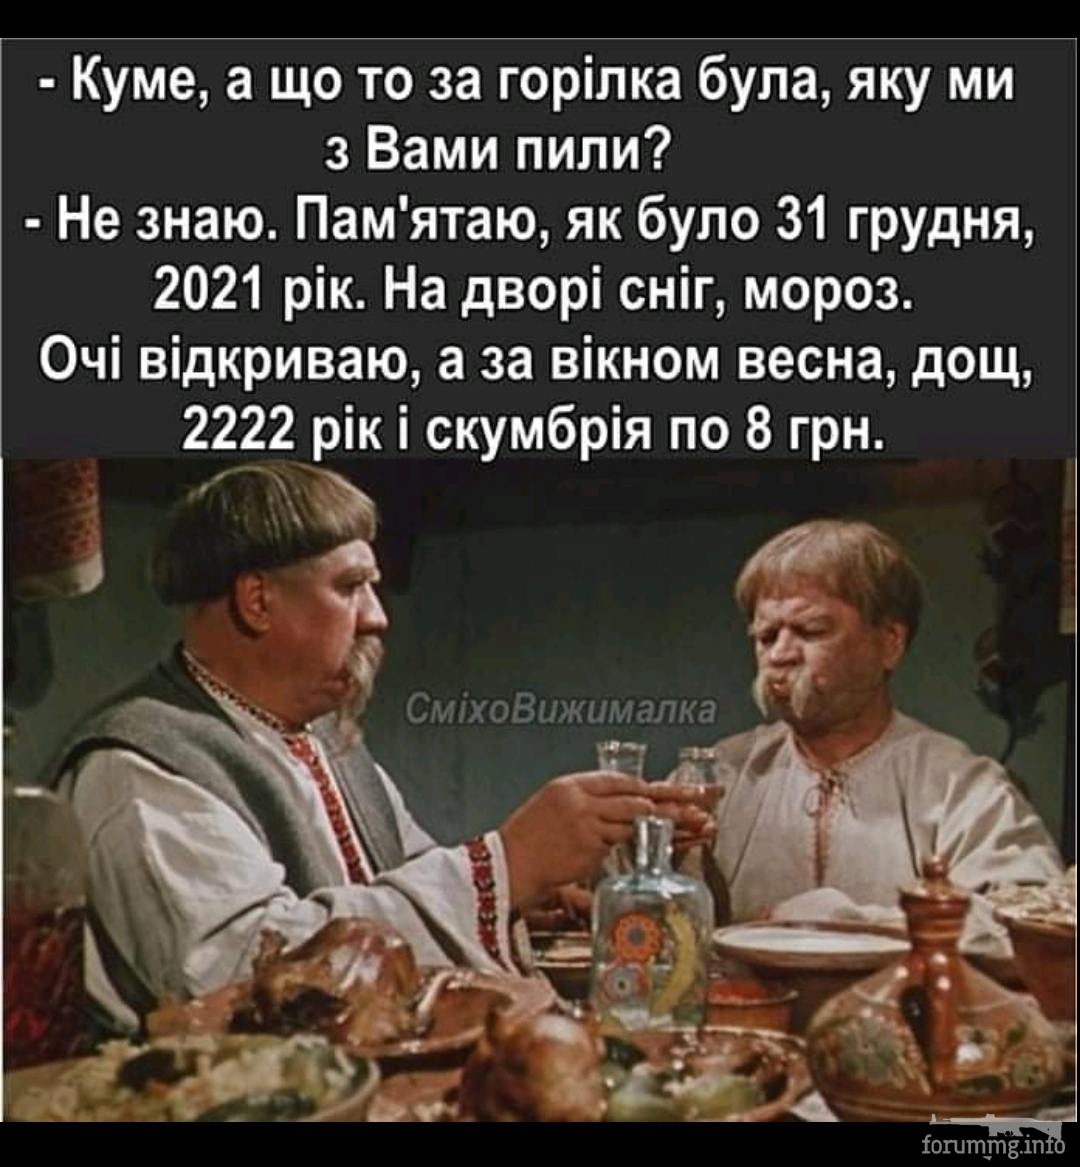 143761 - Пить или не пить? - пятничная алкогольная тема )))